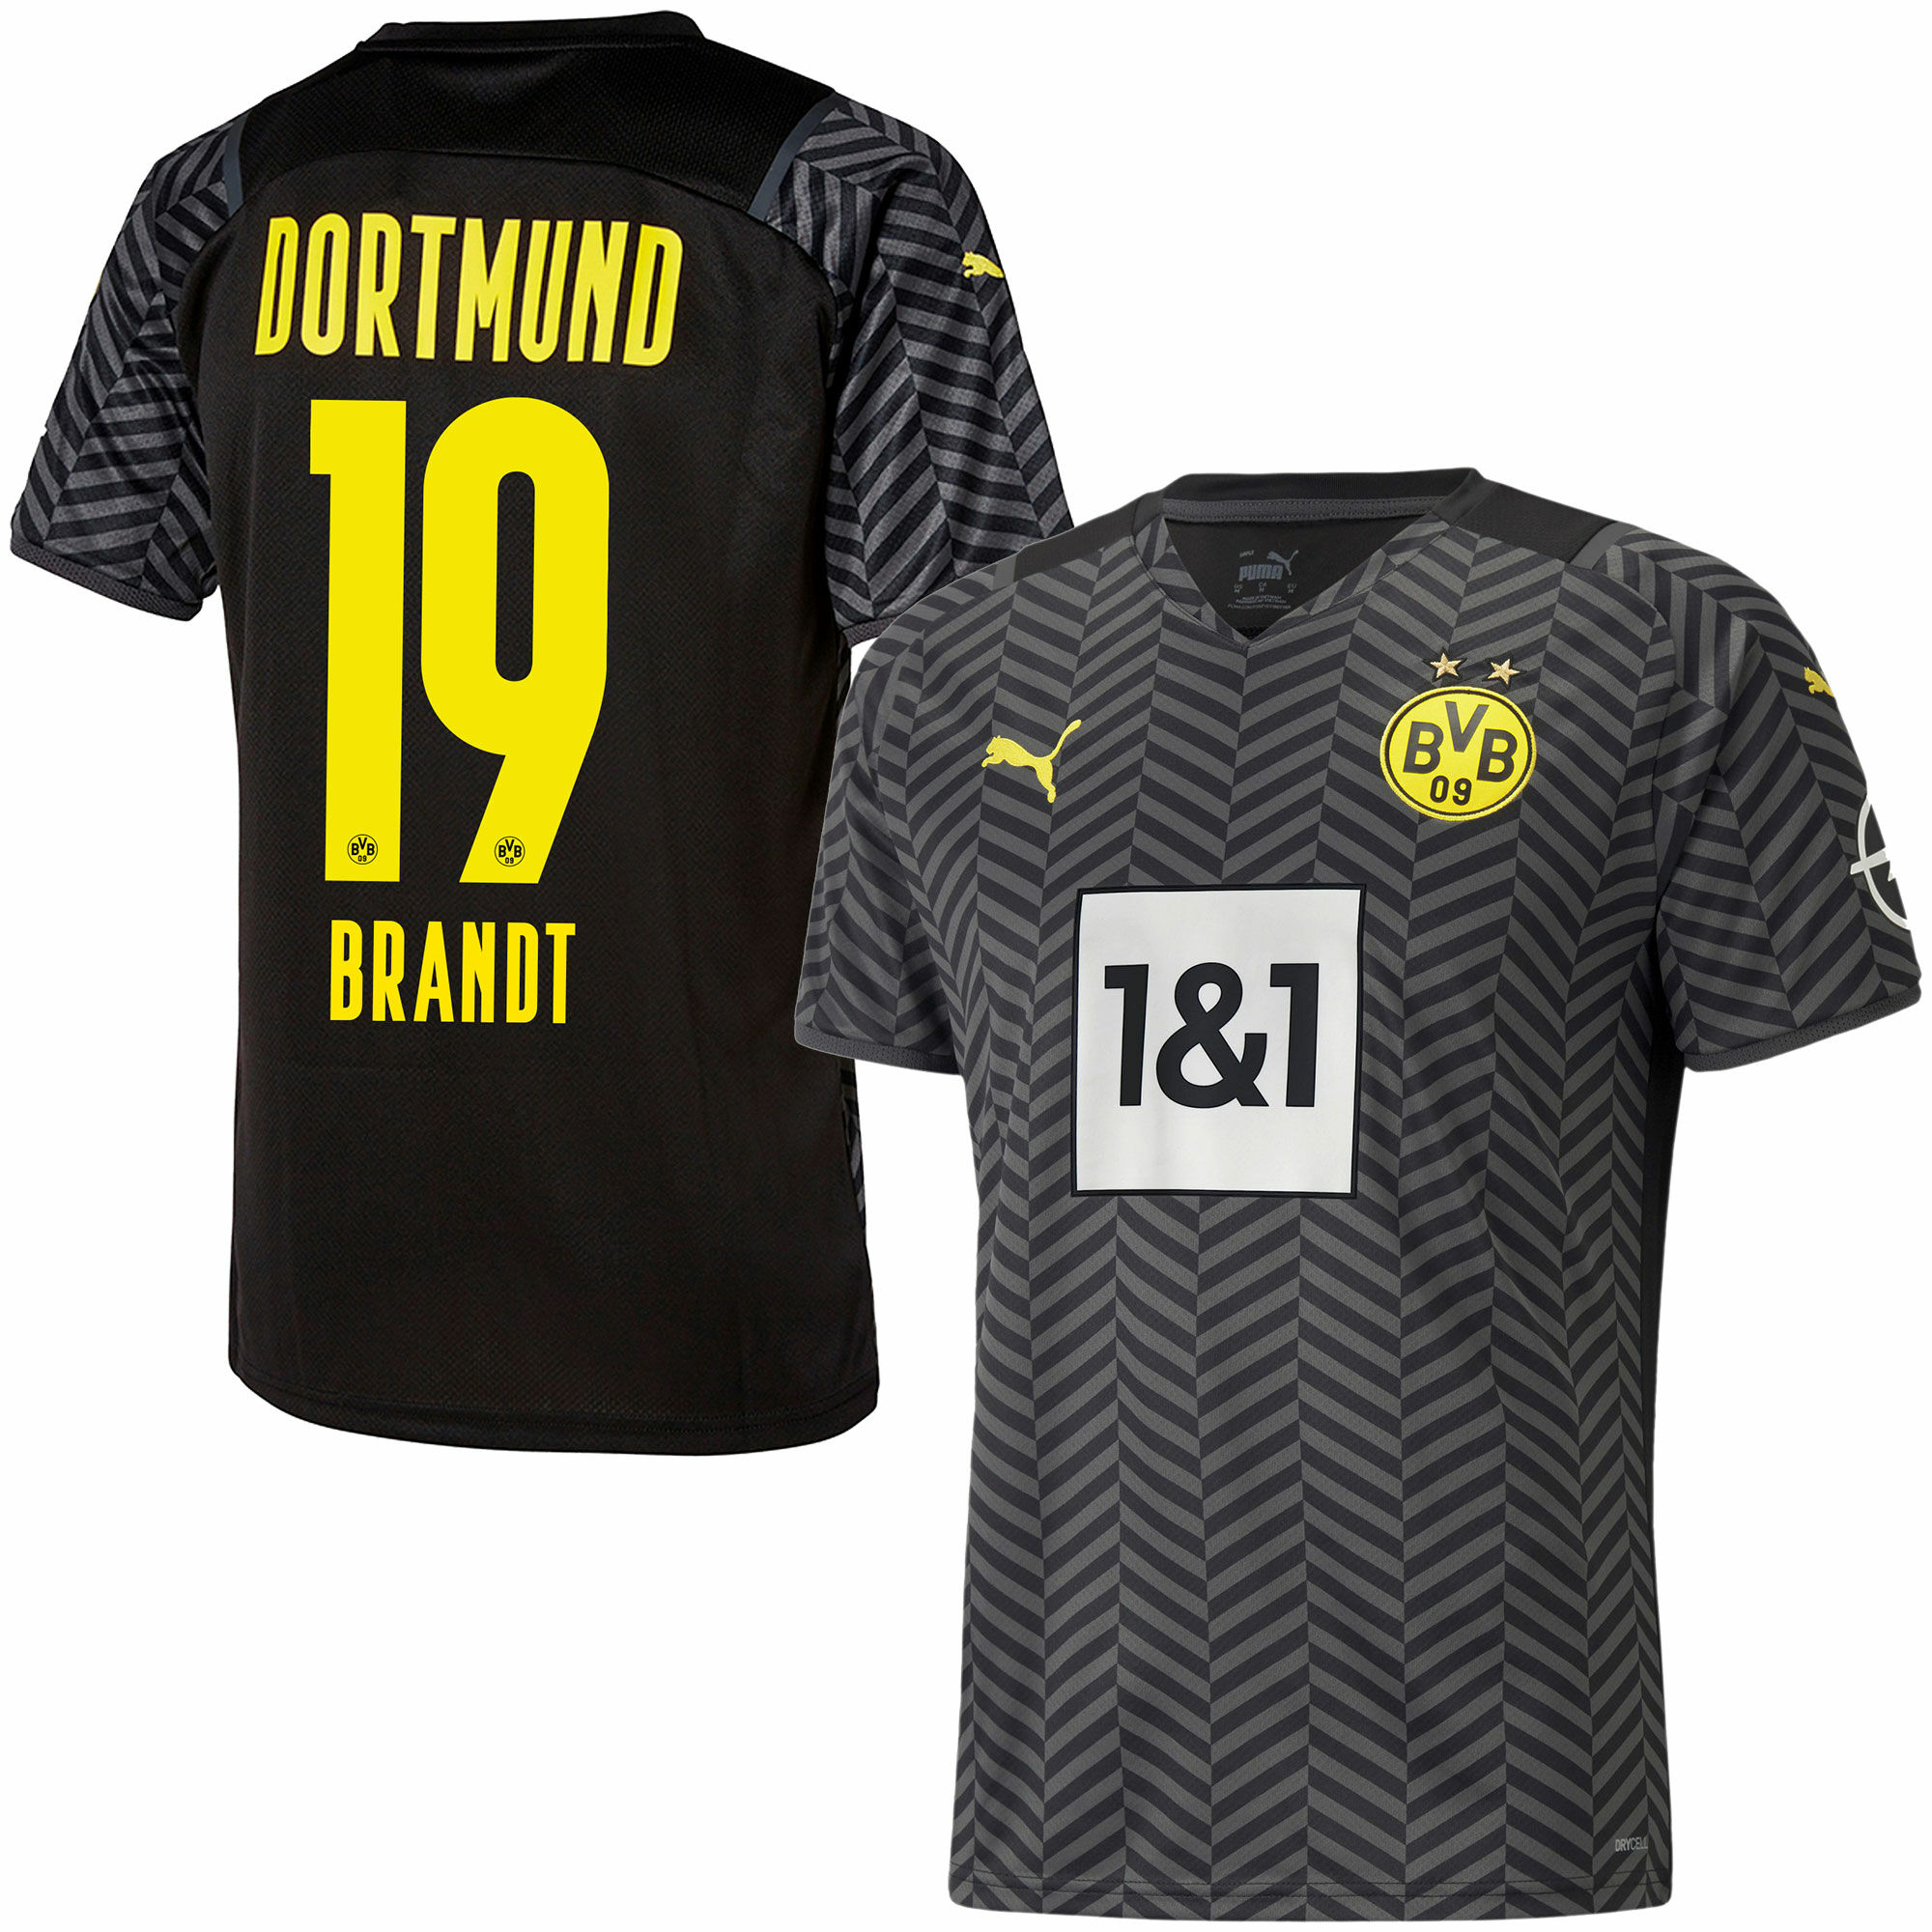 Borussia Dortmund - Dres fotbalový - sezóna 2021/22, Julian Brandt, číslo 19, černý, venkovní